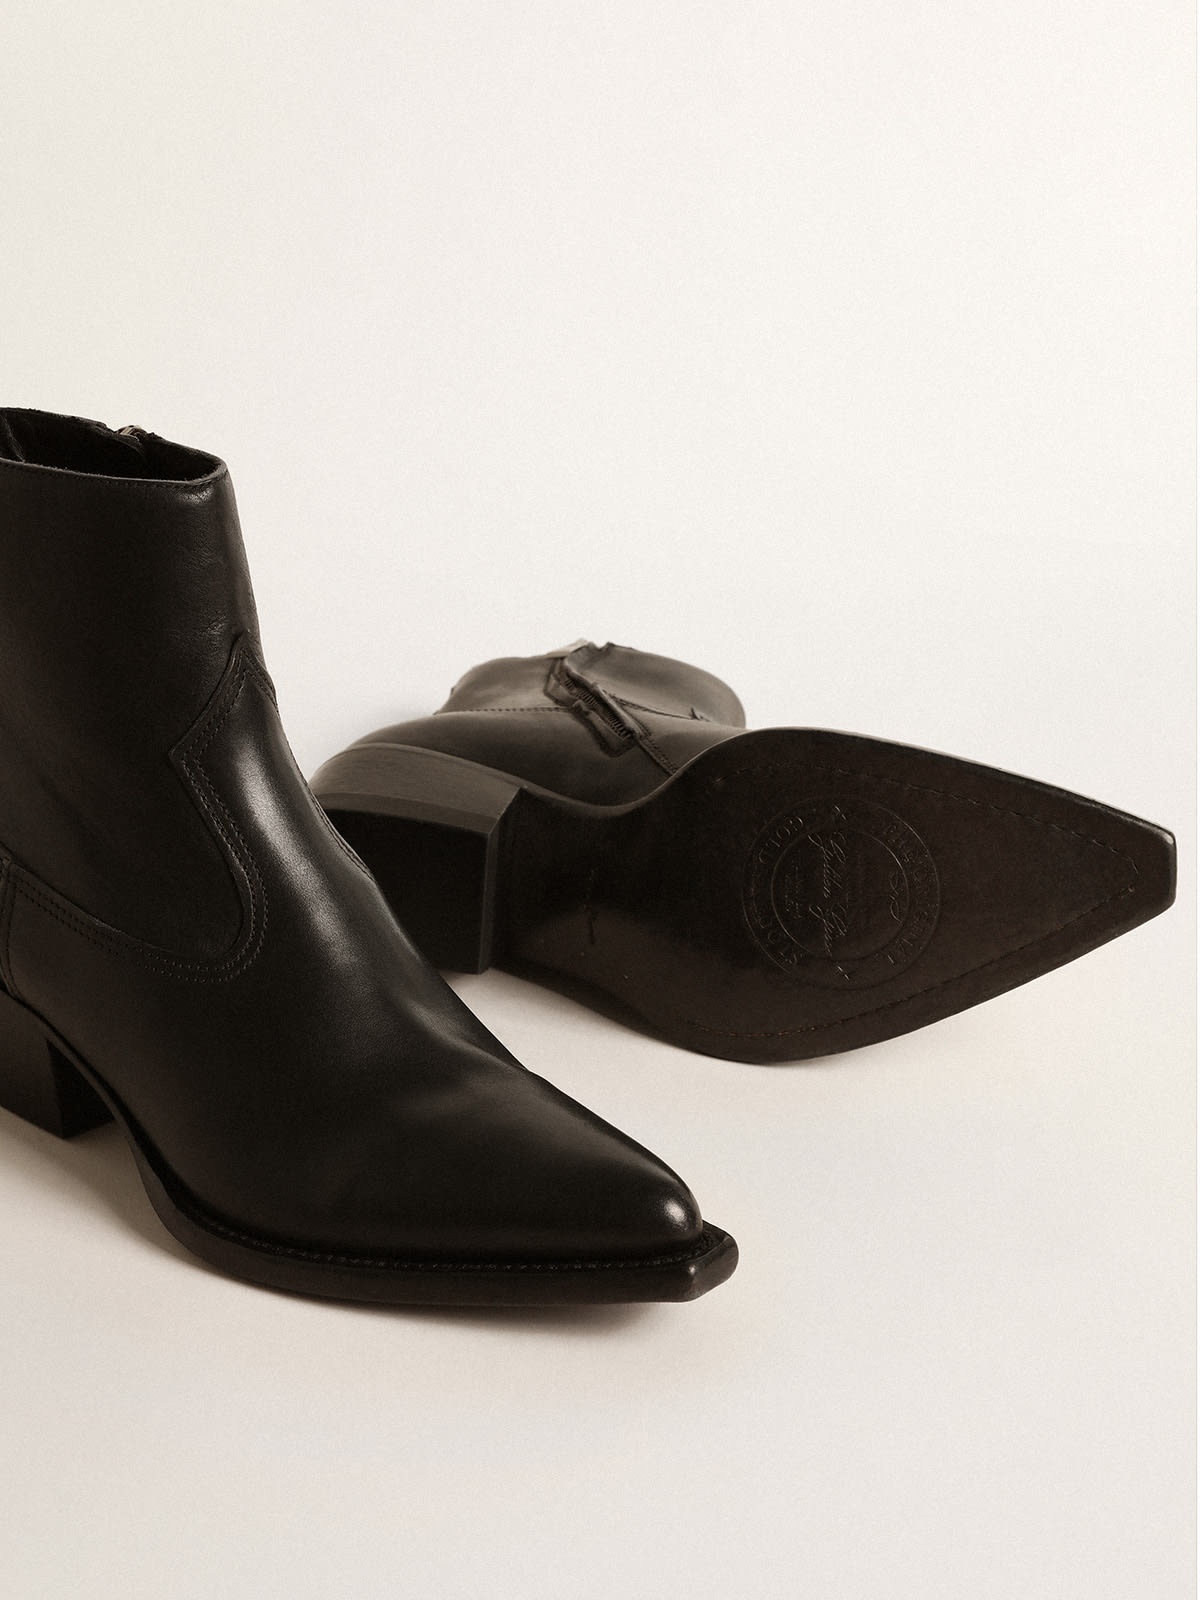 Women’s Debbie boots in black leather - 3